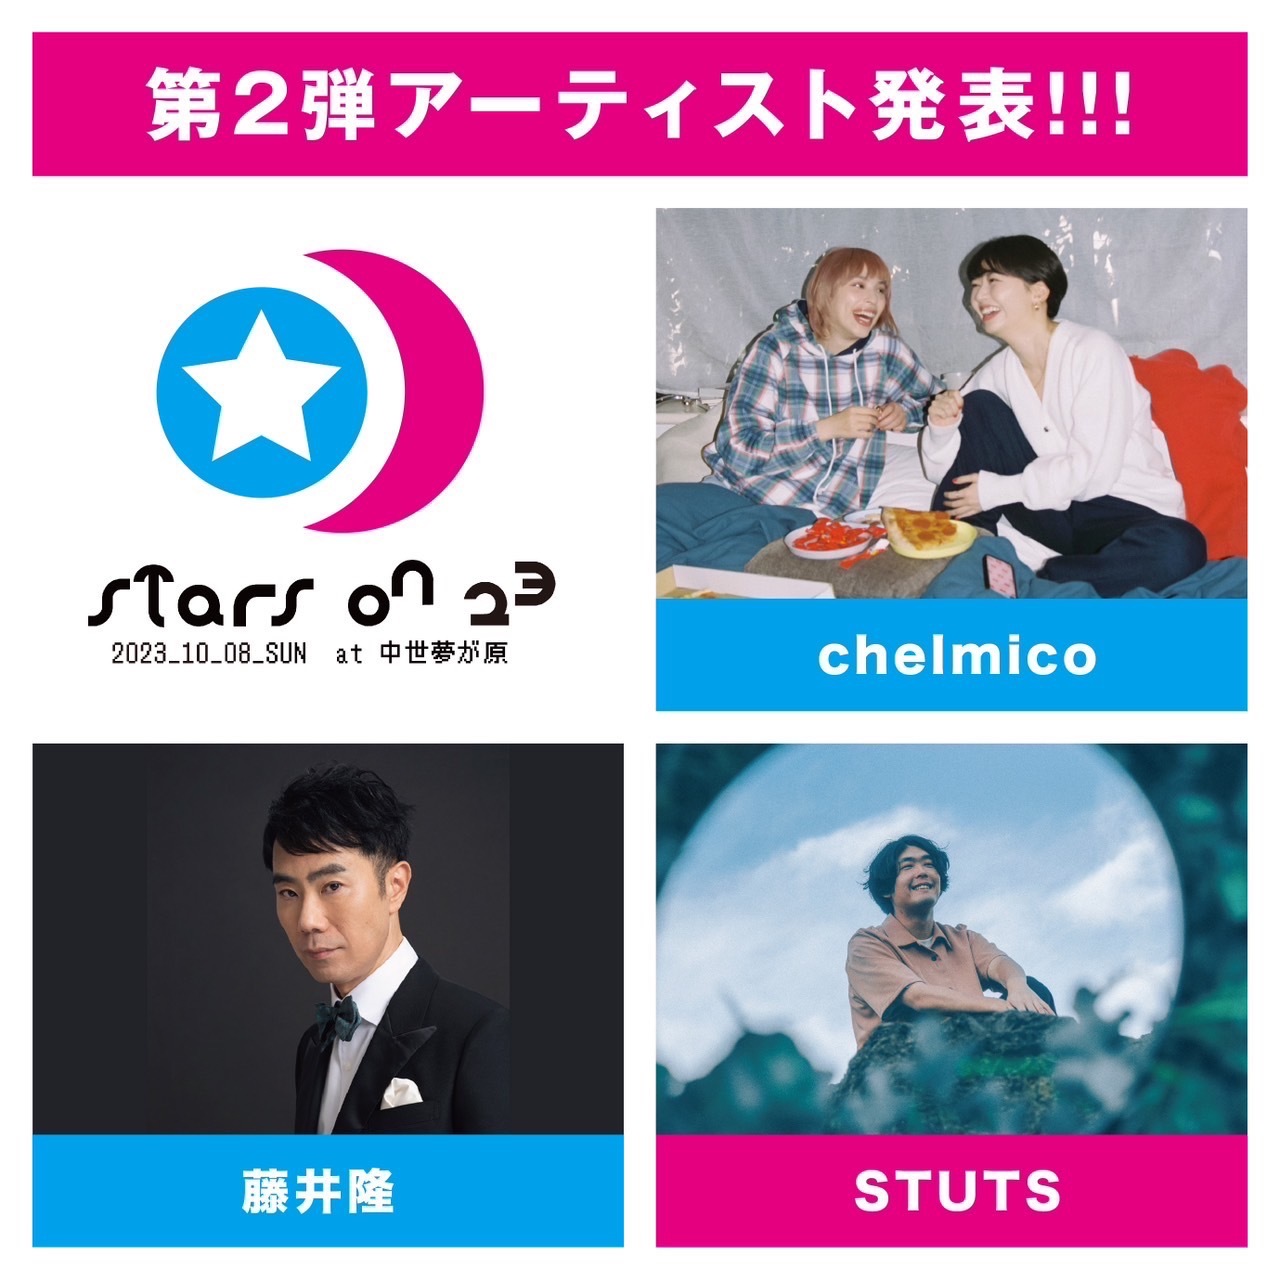 右上から時計回りに、chelmico、STUTS、藤井隆　『STARS ON 23』第二弾出演アーティスト